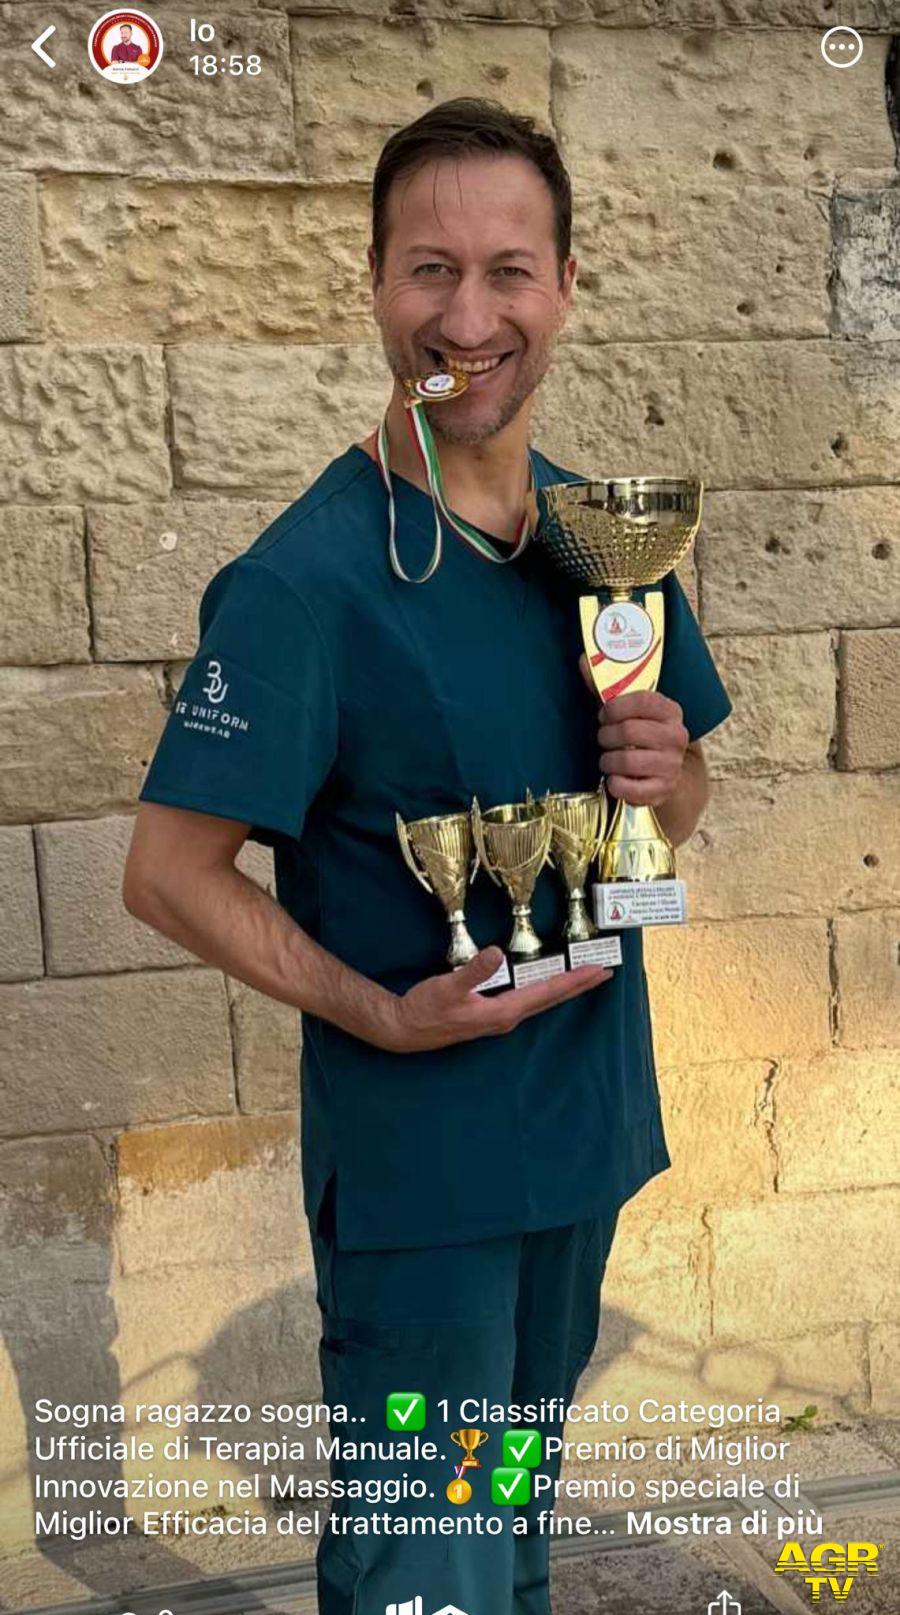 Marco Ranucci con coppe e medaglie dopo il successo ai Campionati foto da comunicato s